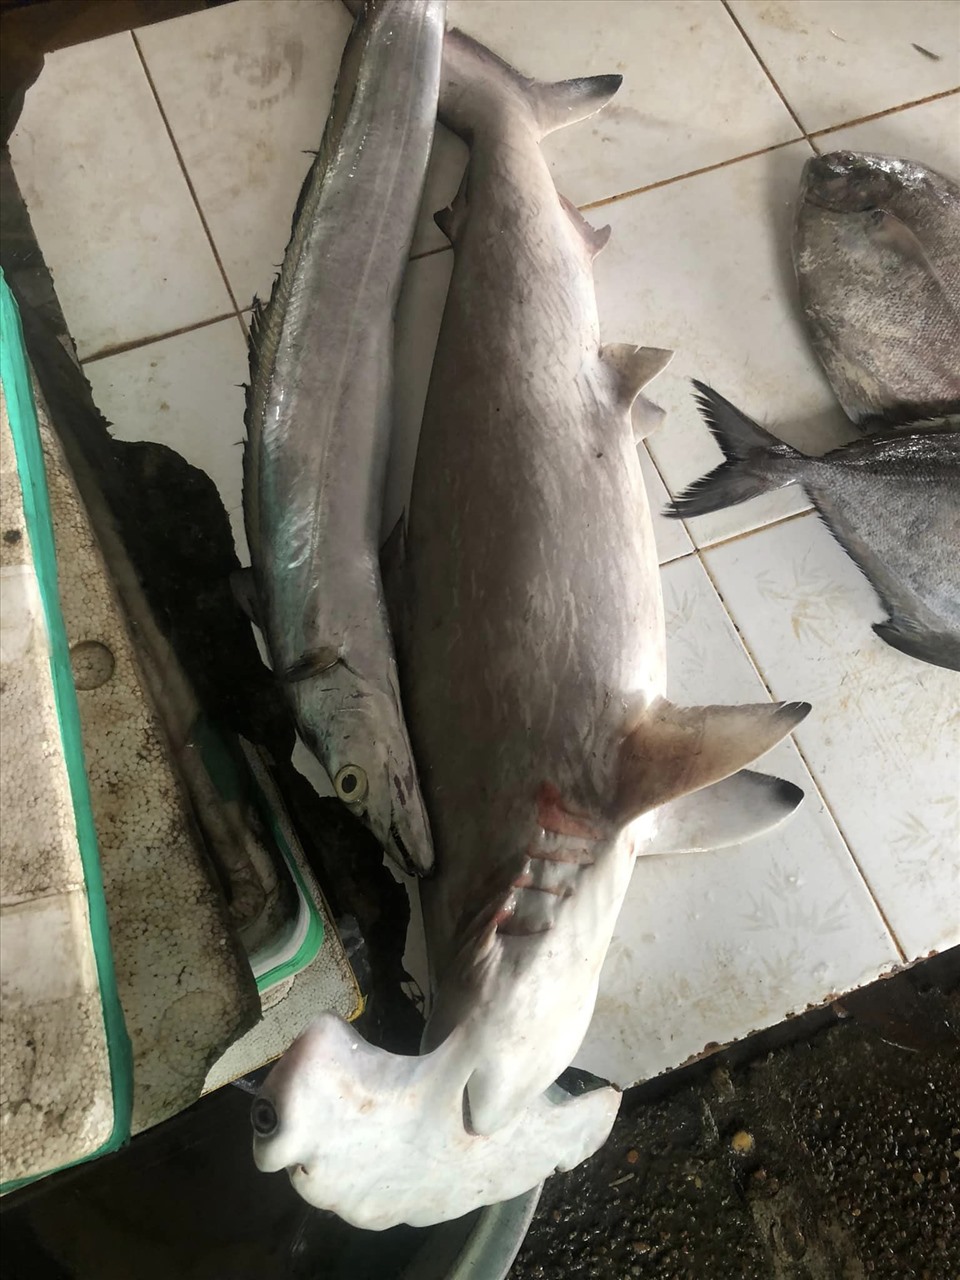 Quảng Nam: Rao bán cá quý hiếm, giá chỉ hơn 100.000 đồng/kg